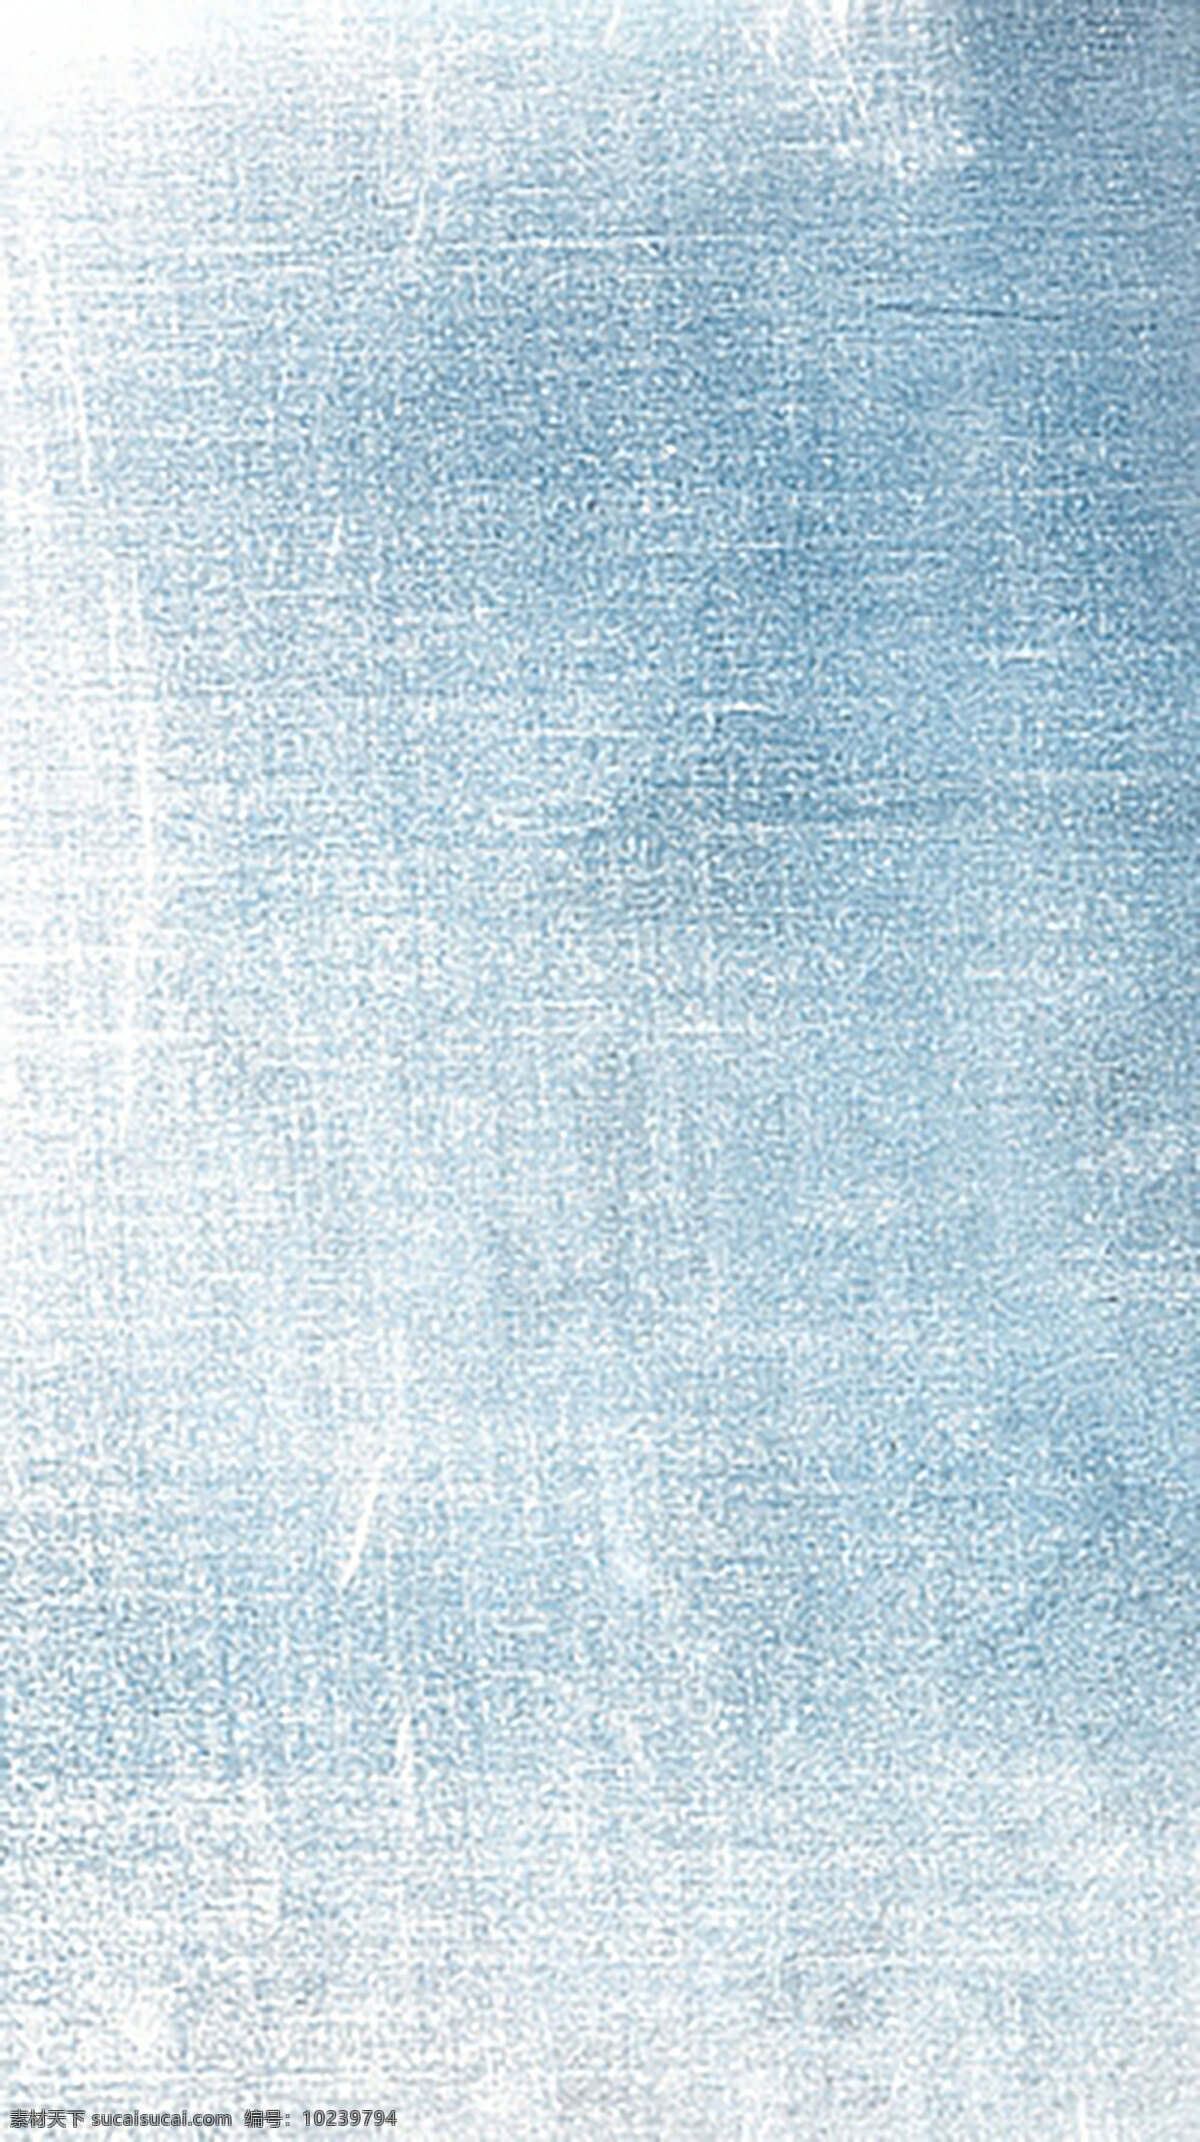 蓝色墙面纹理 白色 蓝色 黑色 高清 贴图 质感 背景 深色 纹理 划痕 地面 墙面 大图 科技感 凹凸 水珠 透明 拉丝 绸缎 布料 羊皮纸 纸 颗粒感 玻璃 立体 金属